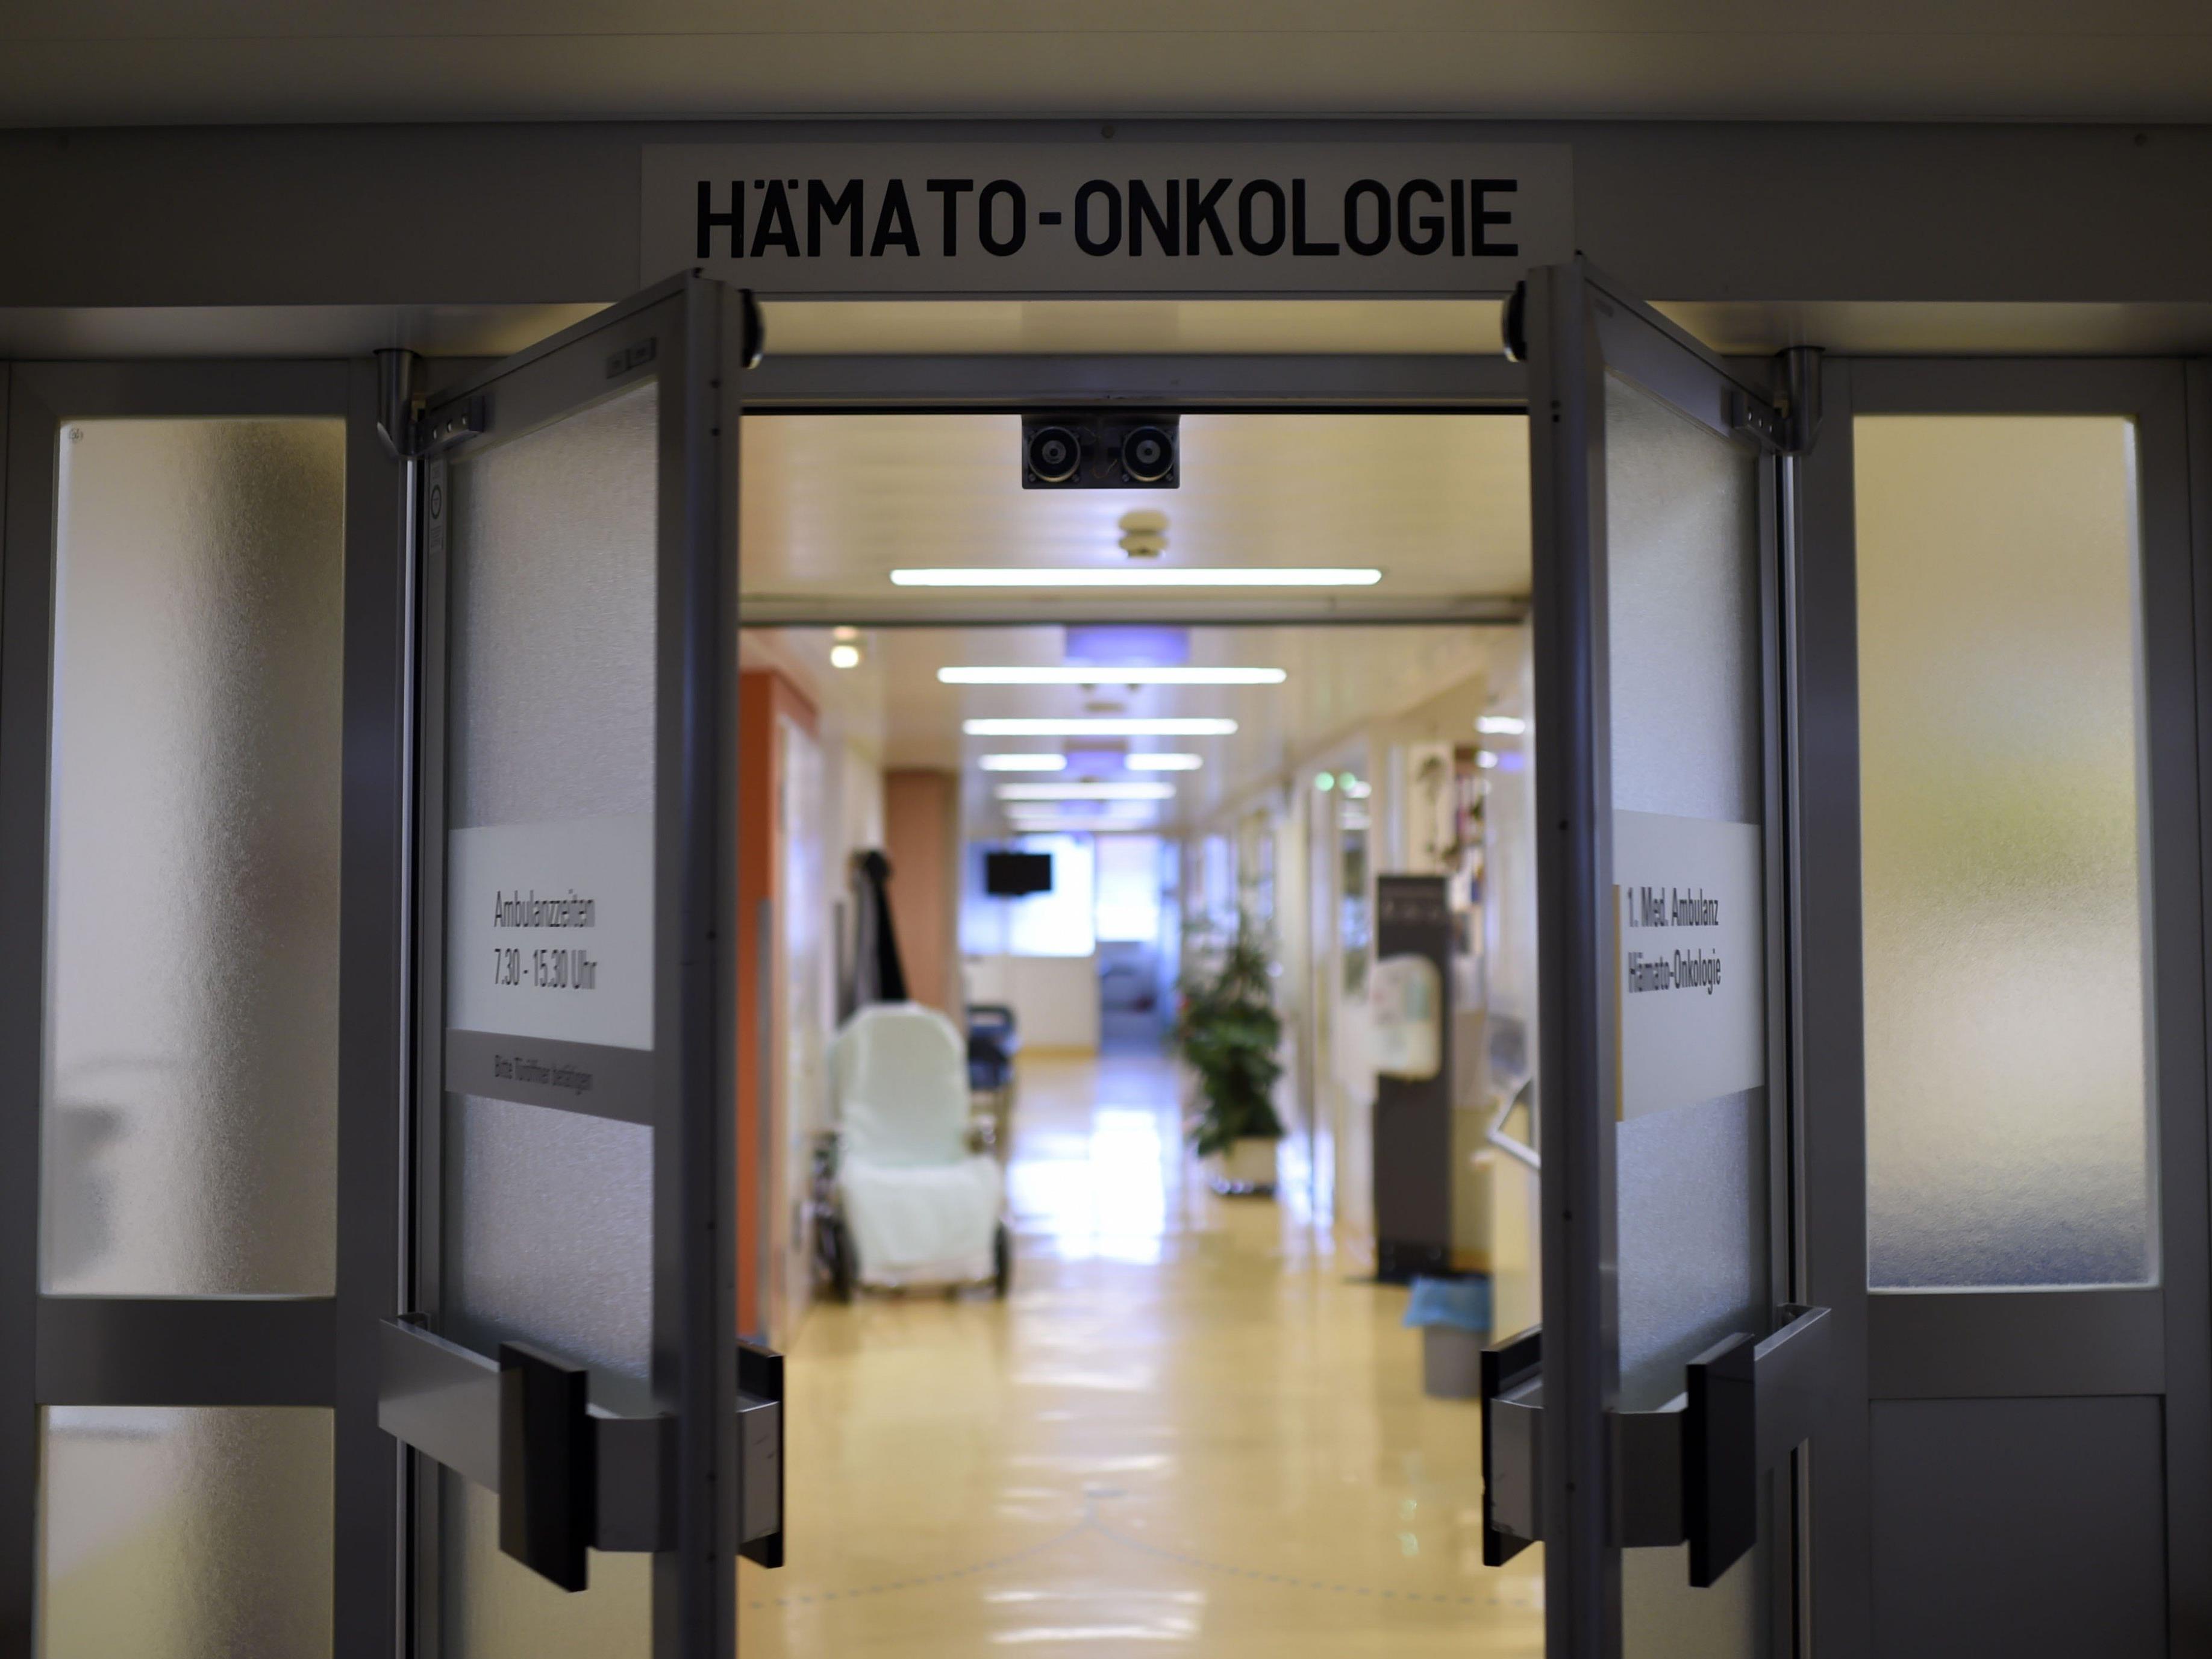 Gesundheit - Ärztekammer wehrt sich gegen "Blockade"-Vorwurf